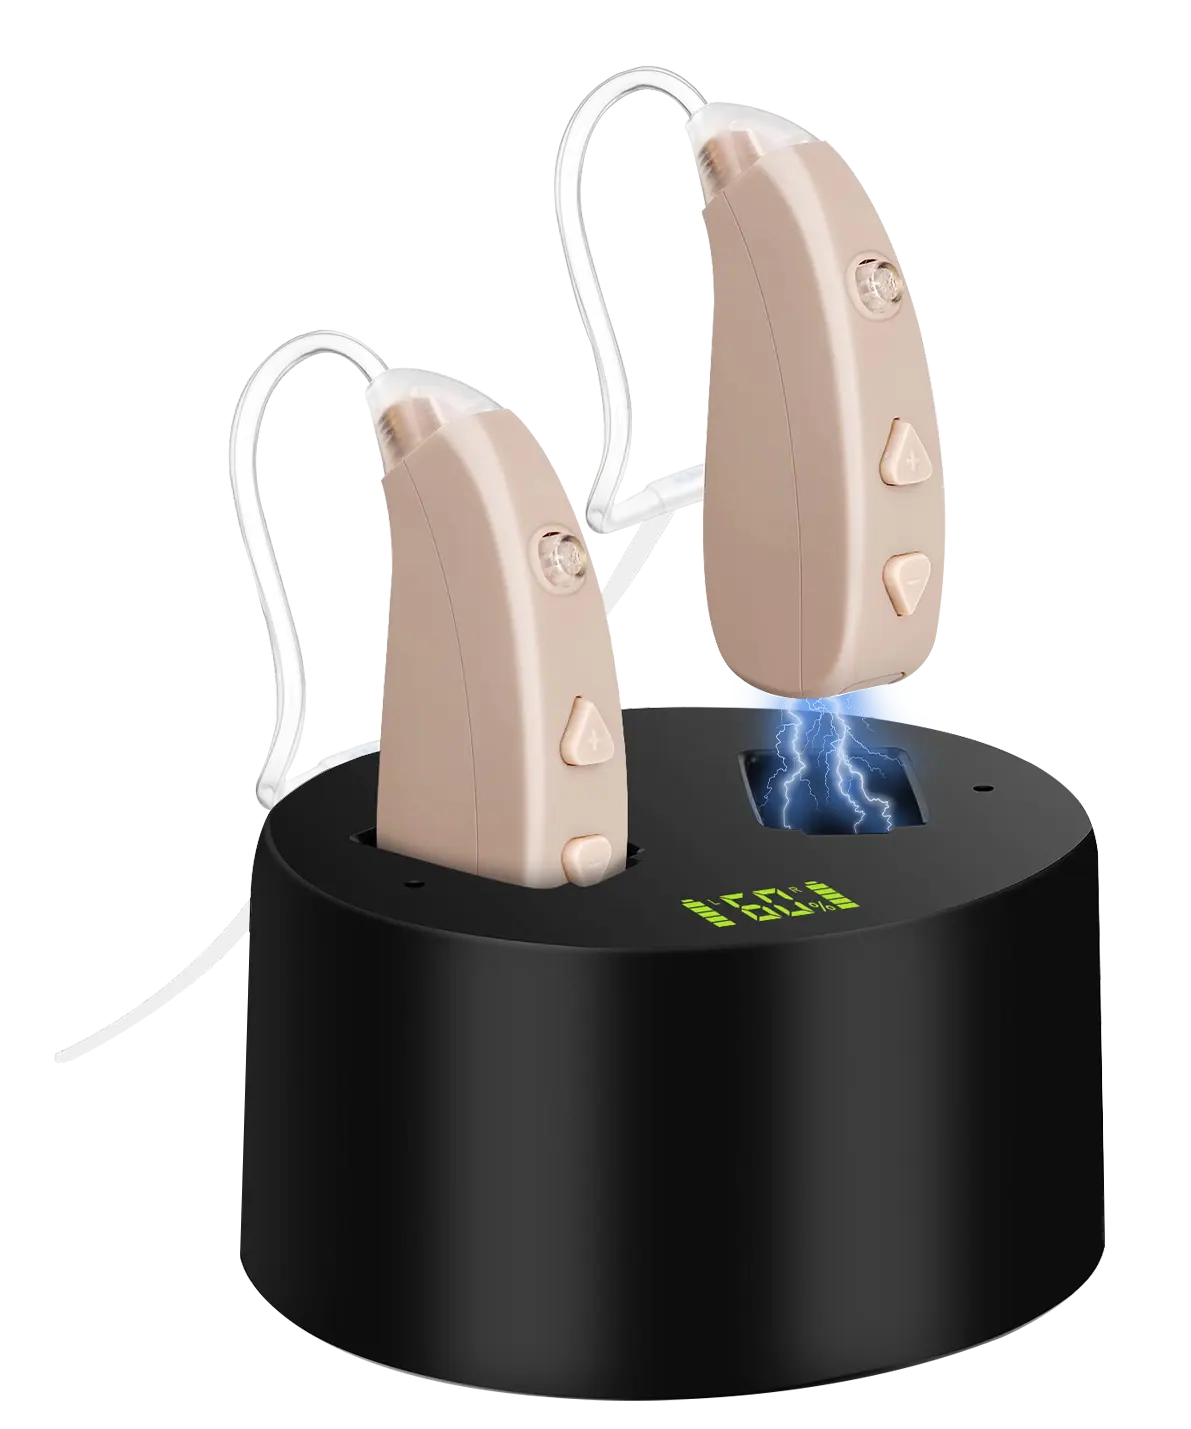 Oem/ODM chấp nhận được 130dB BTE trợ thính khuếch đại âm thanh chất lượng cao có thể sạc lại máy trợ thính cho người điếc